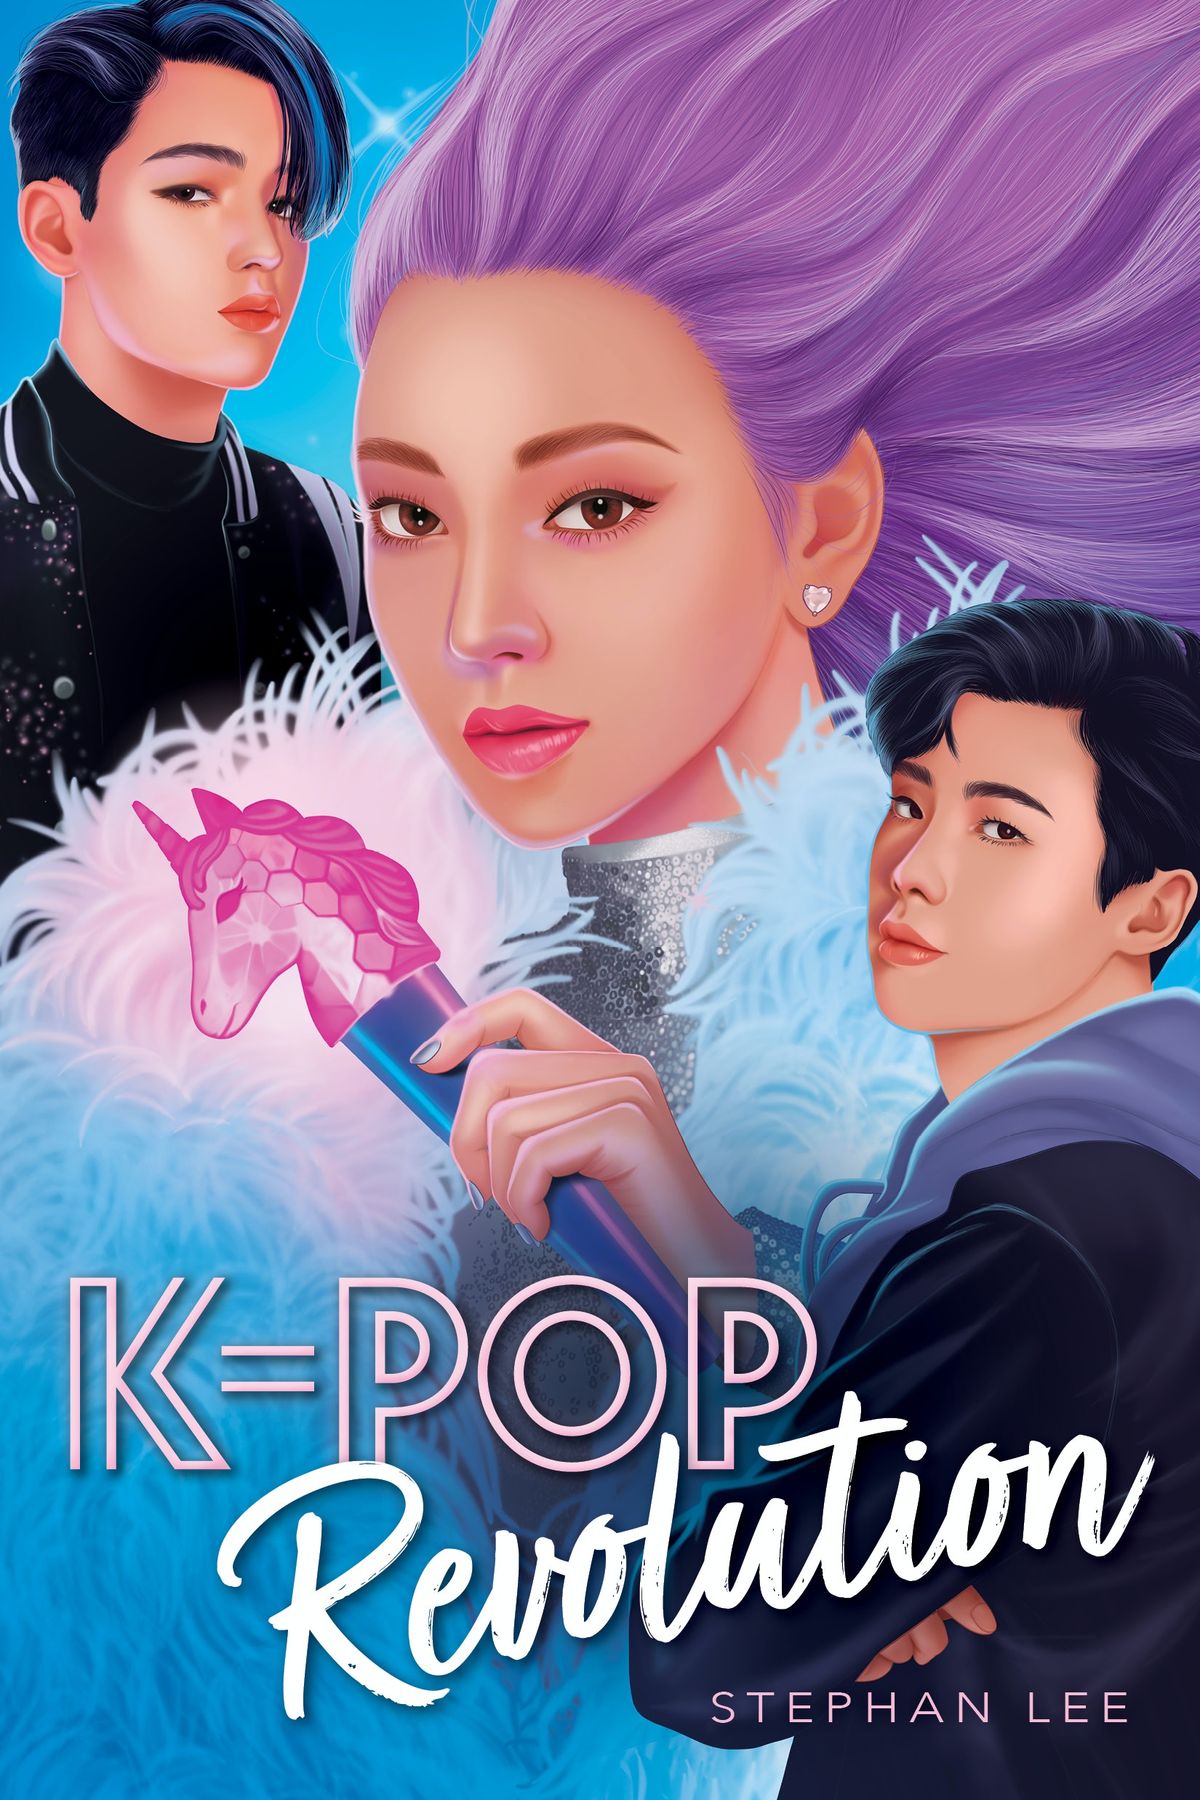 Werfen Sie einen ersten Blick auf Stephan Lees vertrauliche Fortsetzung von K-Pop, K-Pop Revolution